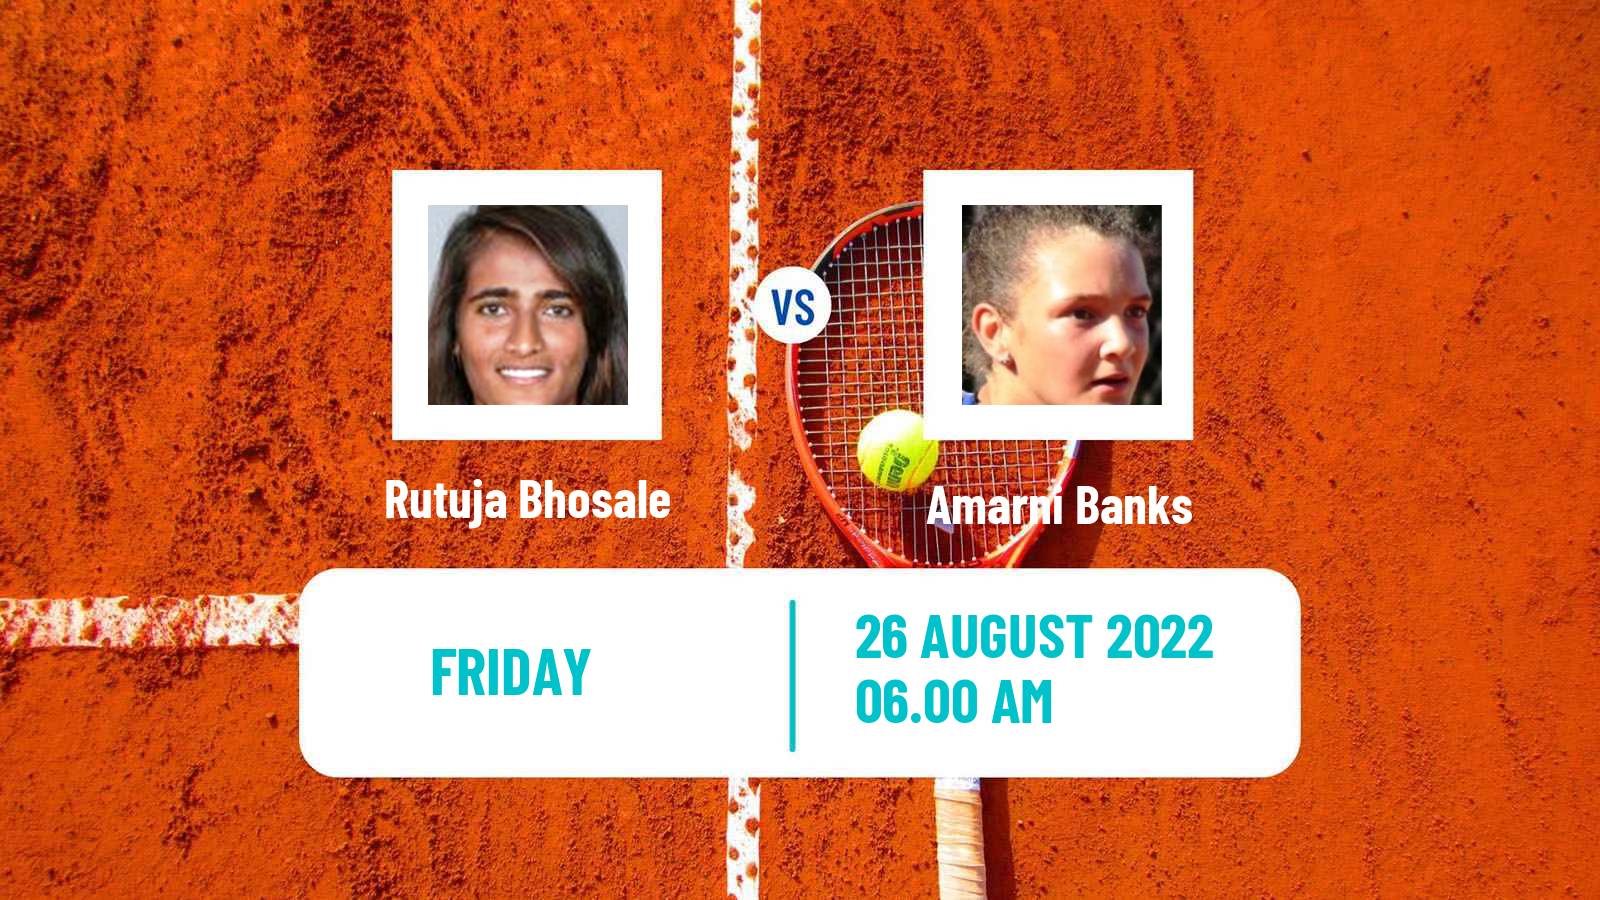 Tennis ITF Tournaments Rutuja Bhosale - Amarni Banks